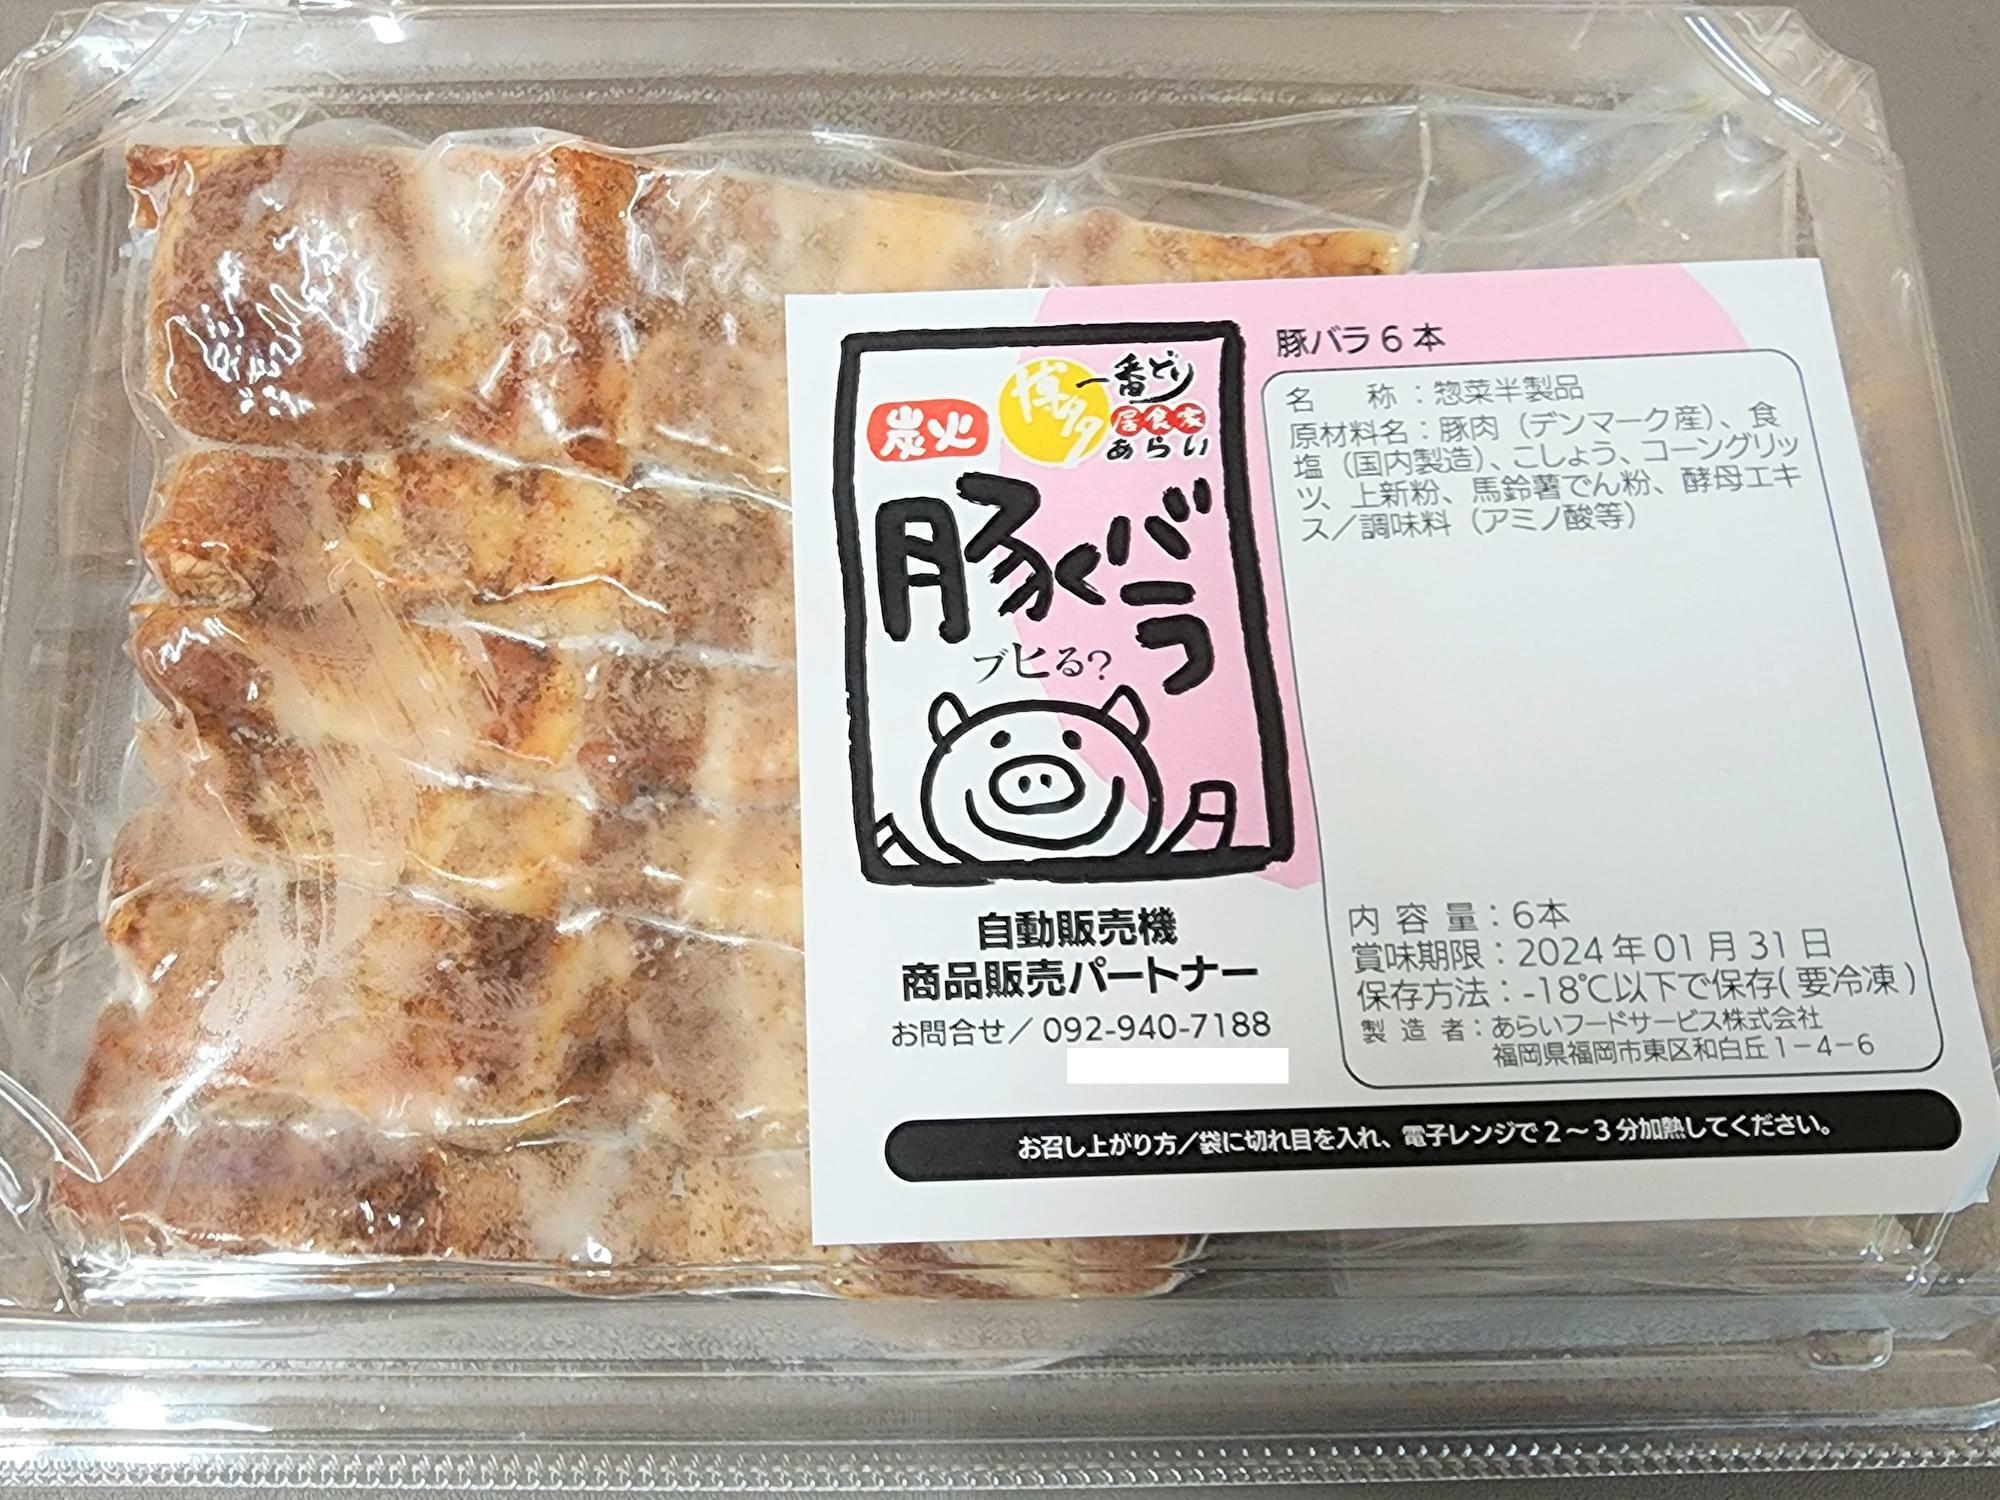 「PiPPon 徳島中洲店」で購入した「豚バラ」。